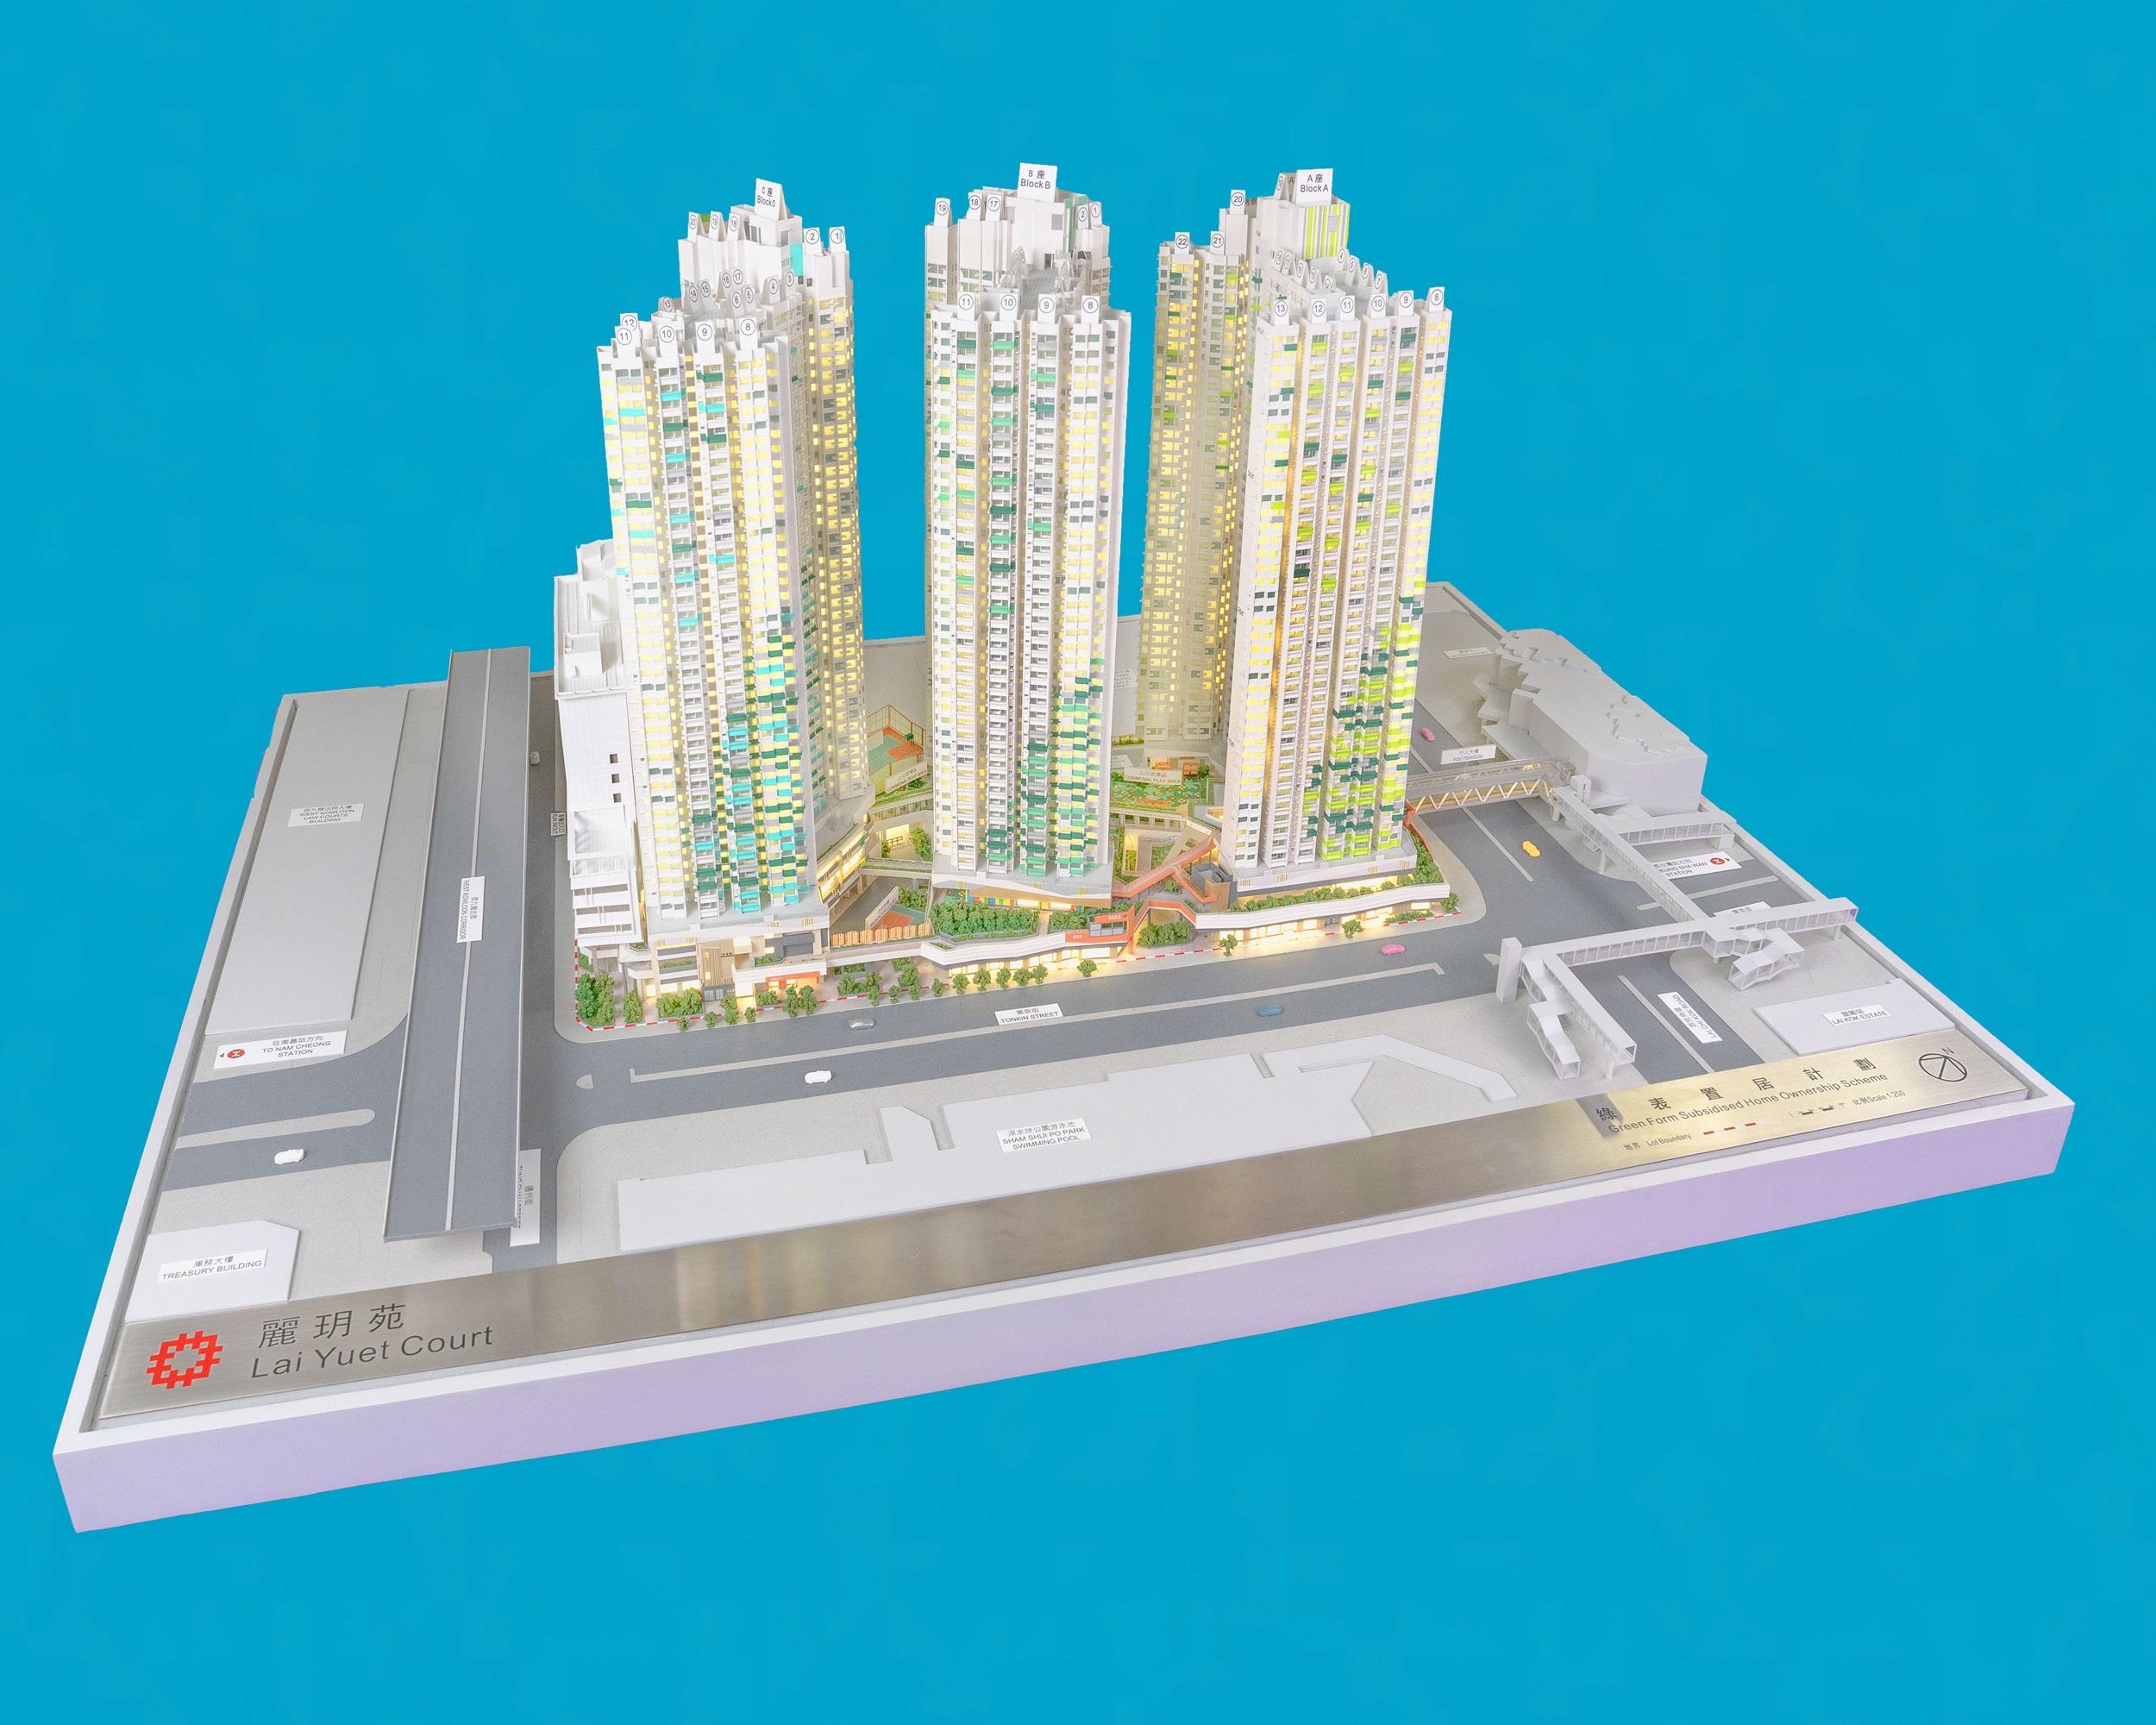 「出售绿表置居计划单位2023」三月二十八日开始接受申请。图示该计划的新发展项目丽玥苑的模型。